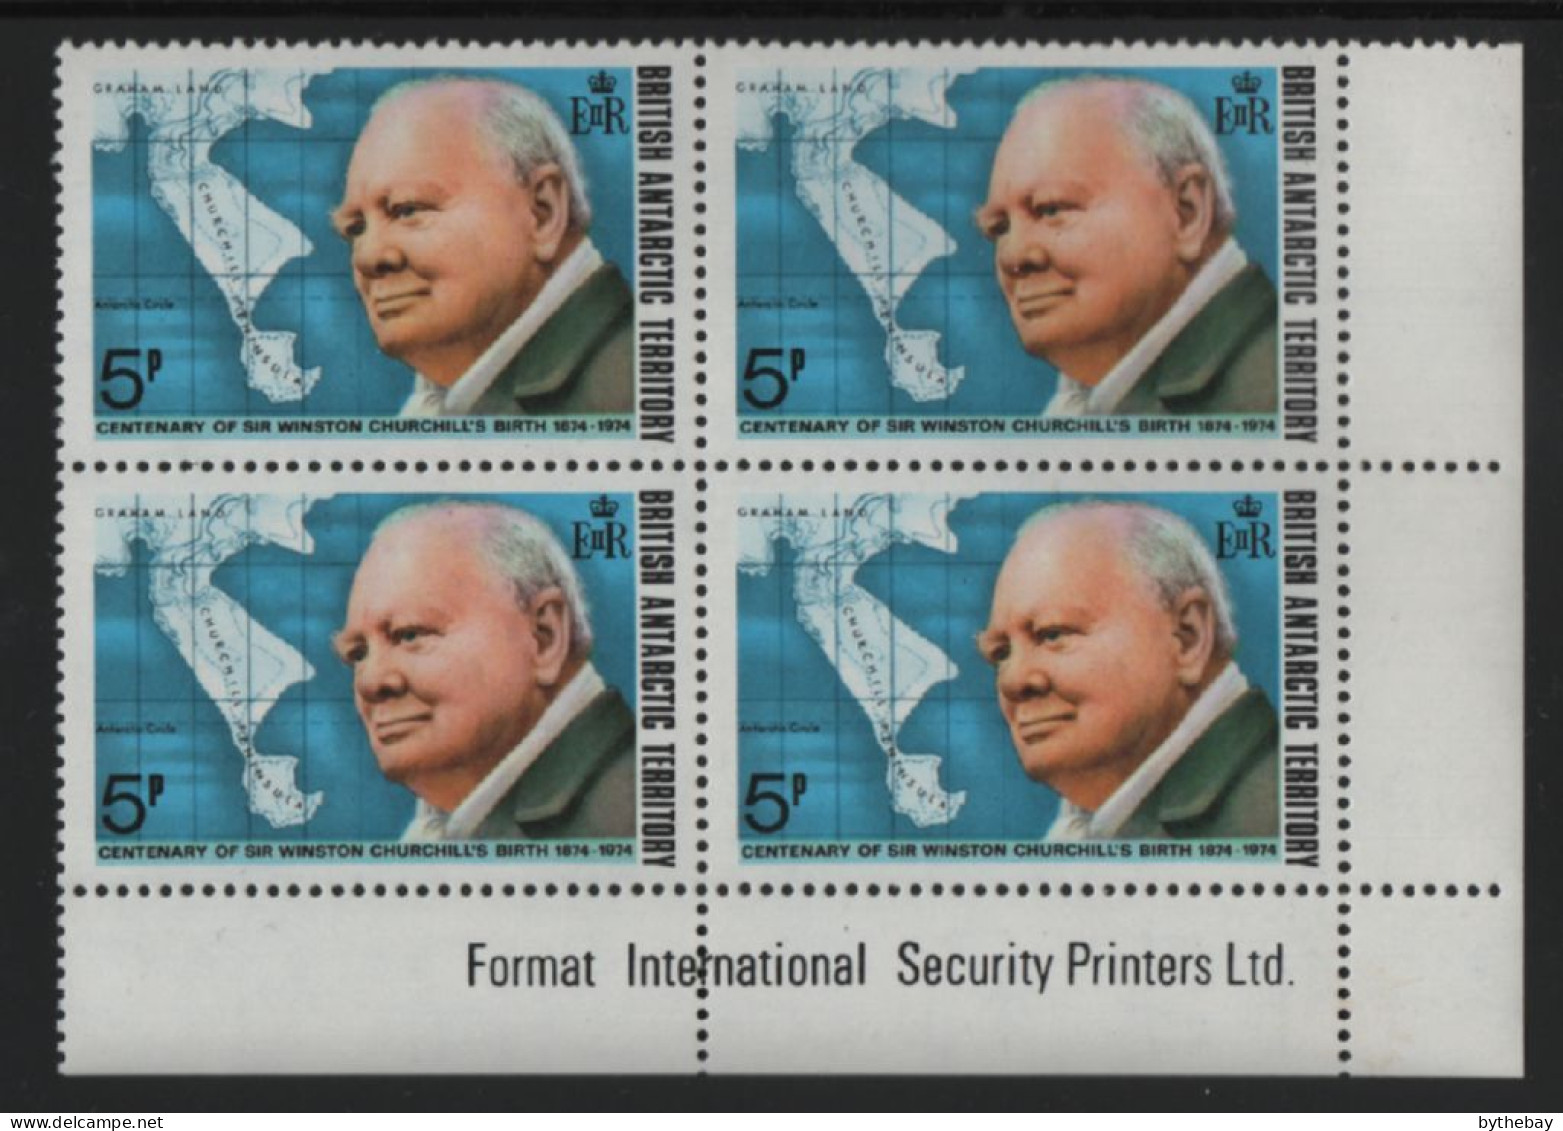 British Antarctic Territory 1974 MNH Sc 62 5p Churchill LR Corner Block - Unused Stamps